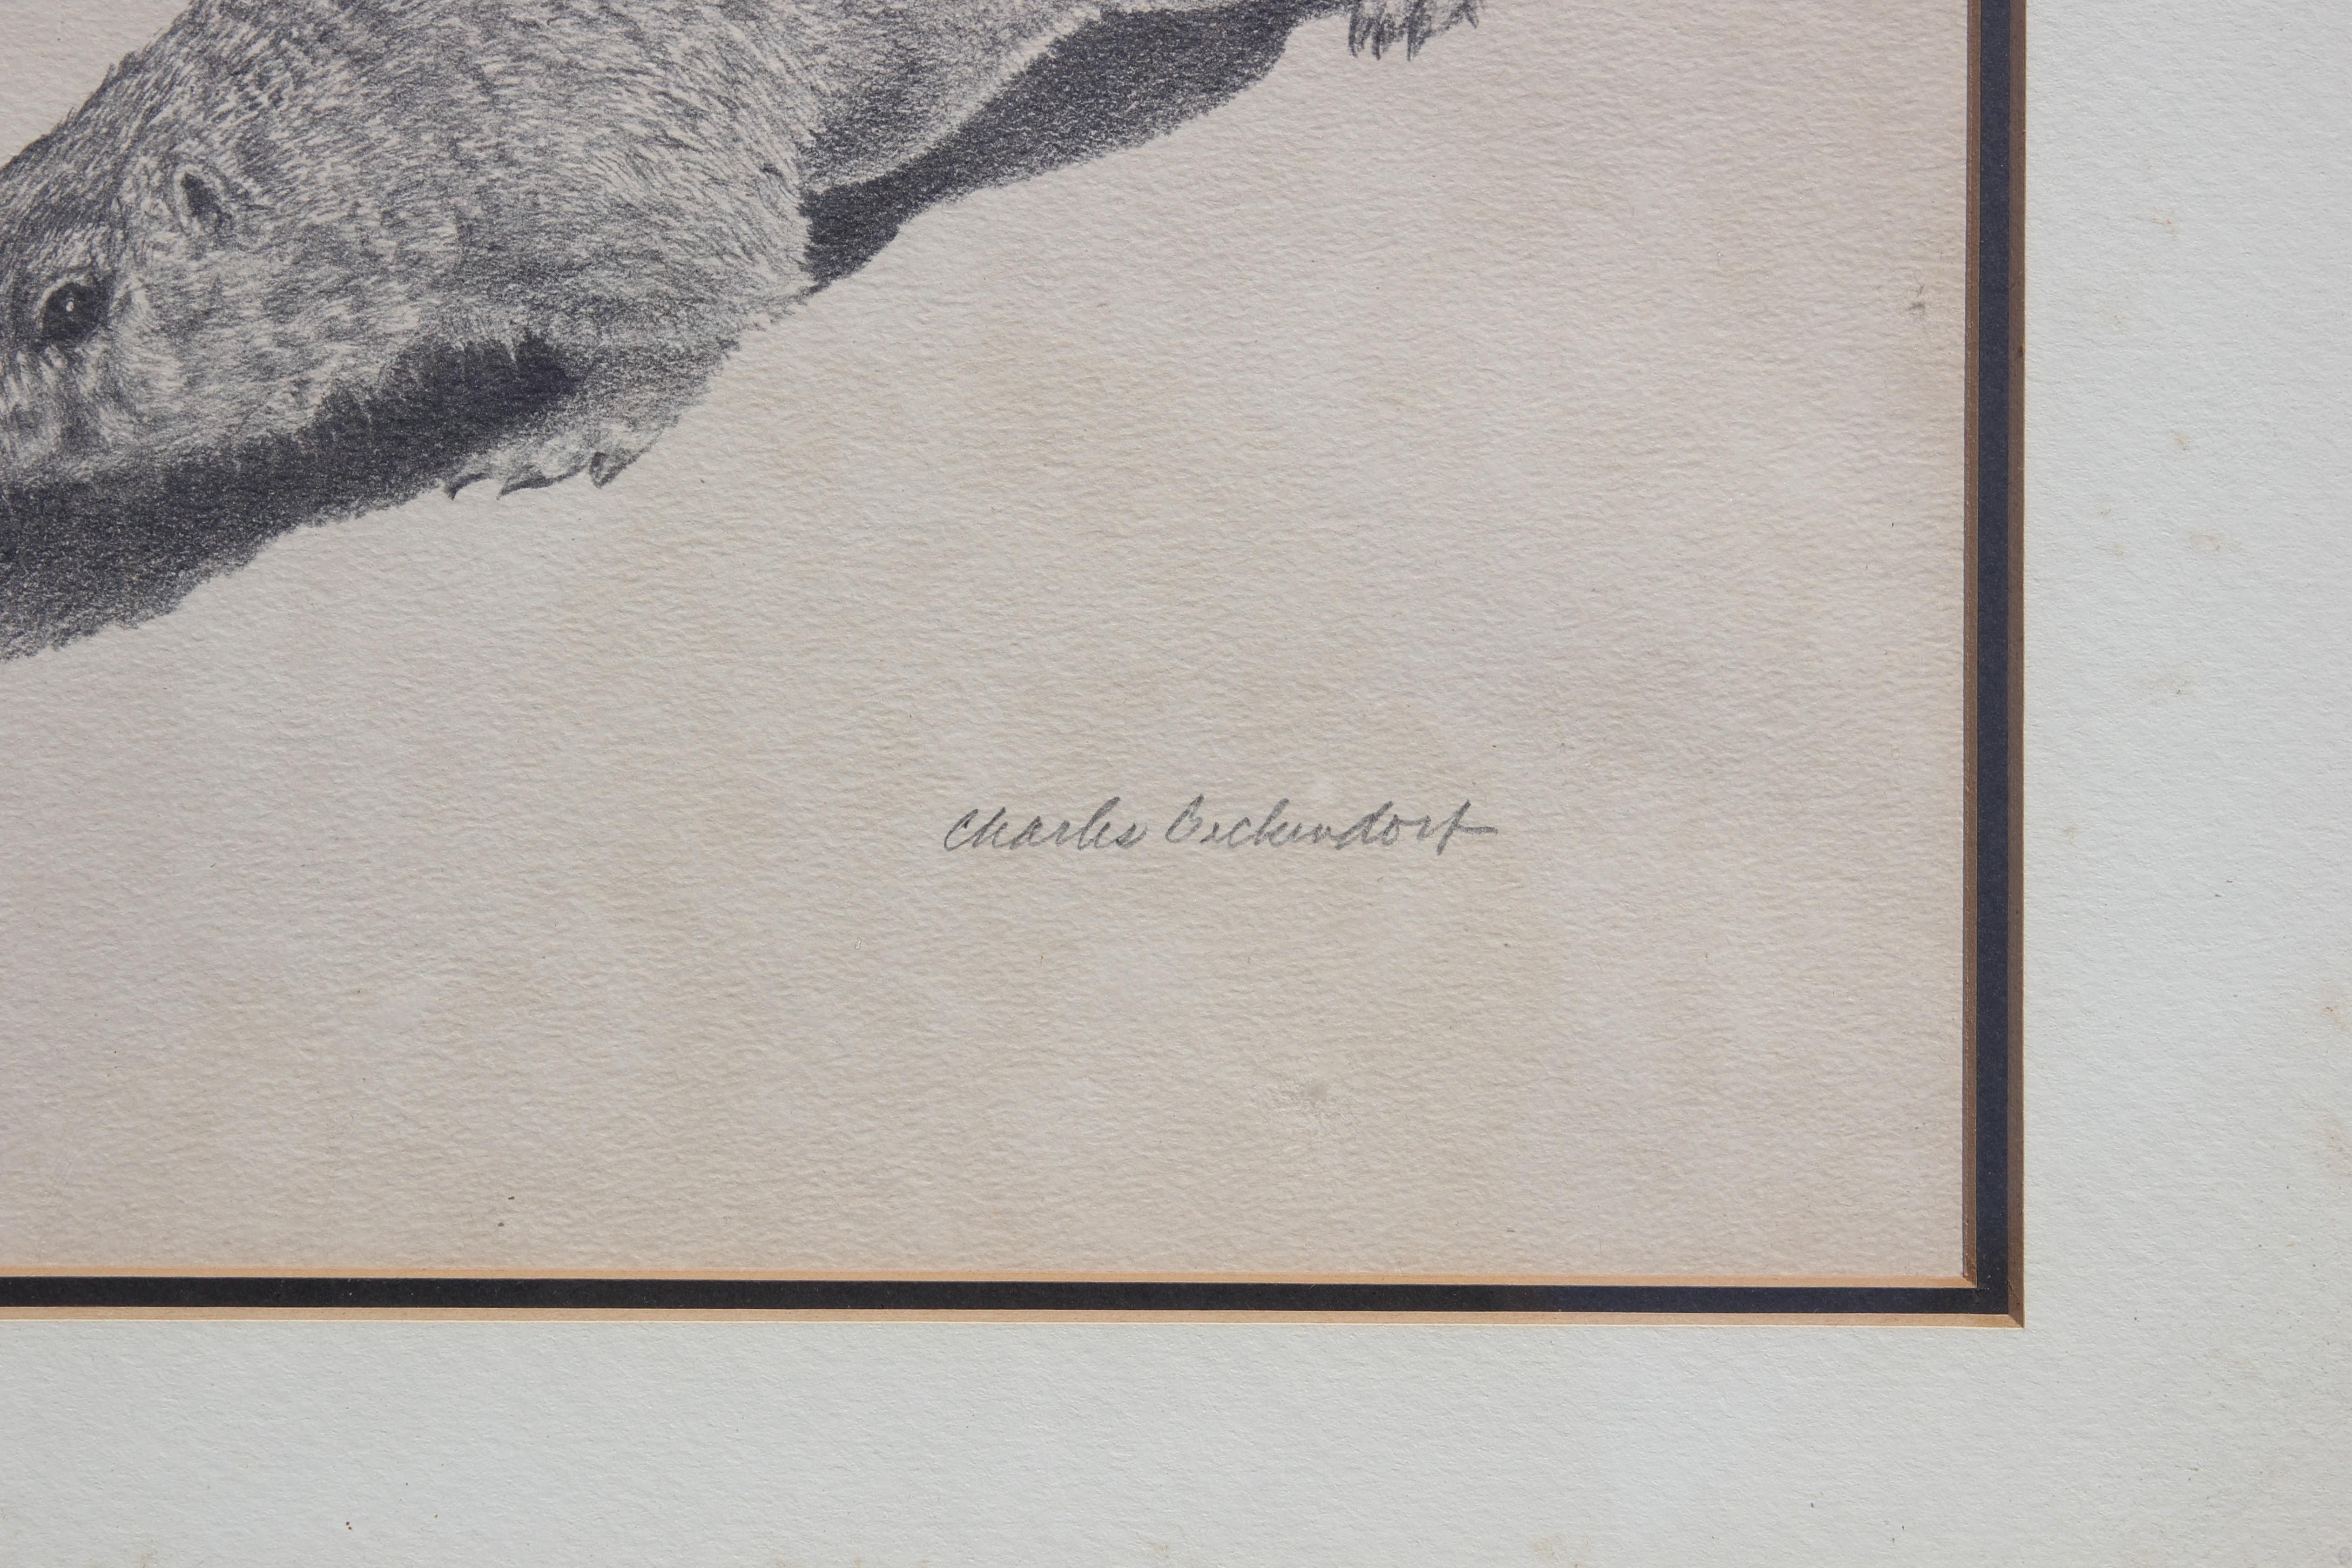  Ein signierter und nummerierter Druck von zwei Präriehunden des texanischen Künstlers Charles Beckendorf. Charles hat für diese Serie das Original mit Bleistift gezeichnet. Der Druck wird in einem verchromten Rahmen mit weißem Passepartout